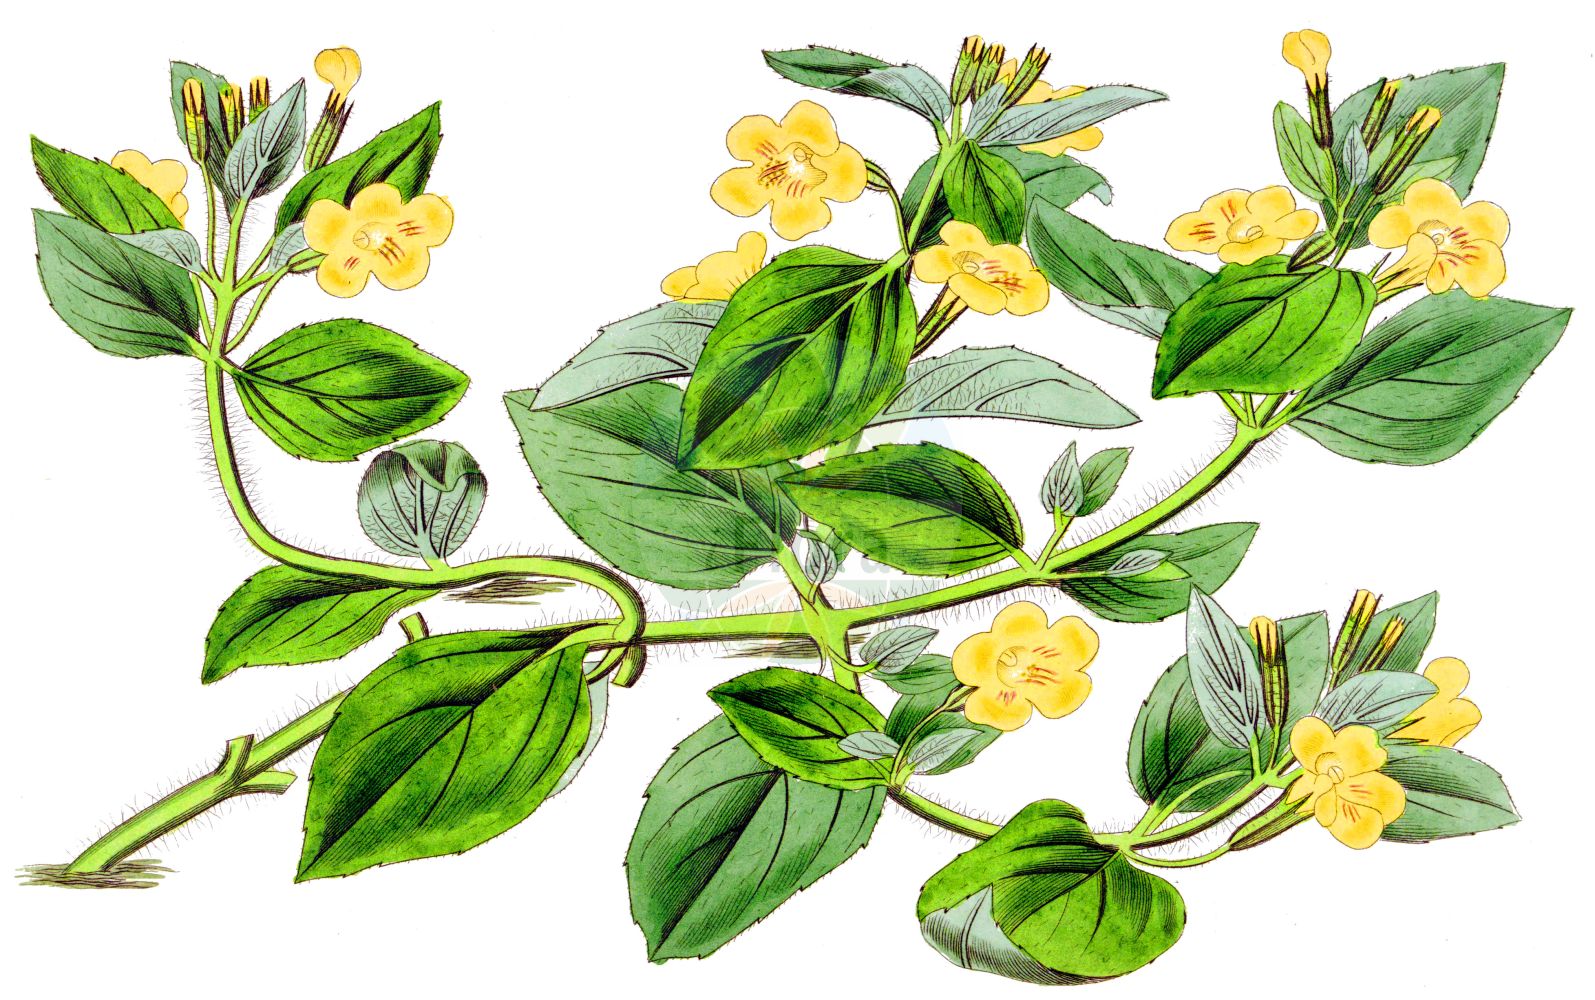 Historische Abbildung von Mimulus moschatus (Moschus-Gauklerblume - Musk). Das Bild zeigt Blatt, Bluete, Frucht und Same. ---- Historical Drawing of Mimulus moschatus (Moschus-Gauklerblume - Musk). The image is showing leaf, flower, fruit and seed.(Mimulus moschatus,Moschus-Gauklerblume,Musk,Mimulus moschatus,Moschus-Gauklerblume,Musk,Musk Flower,Musk Monkey,Musk Plant,Mimulus,Gaucklerblume,Monkeyflowers,Phrymaceae,Gauklerblumengewächse,Lopseed family,Blatt,Bluete,Frucht,Same,leaf,flower,fruit,seed,Botanical Register (1815-1828))